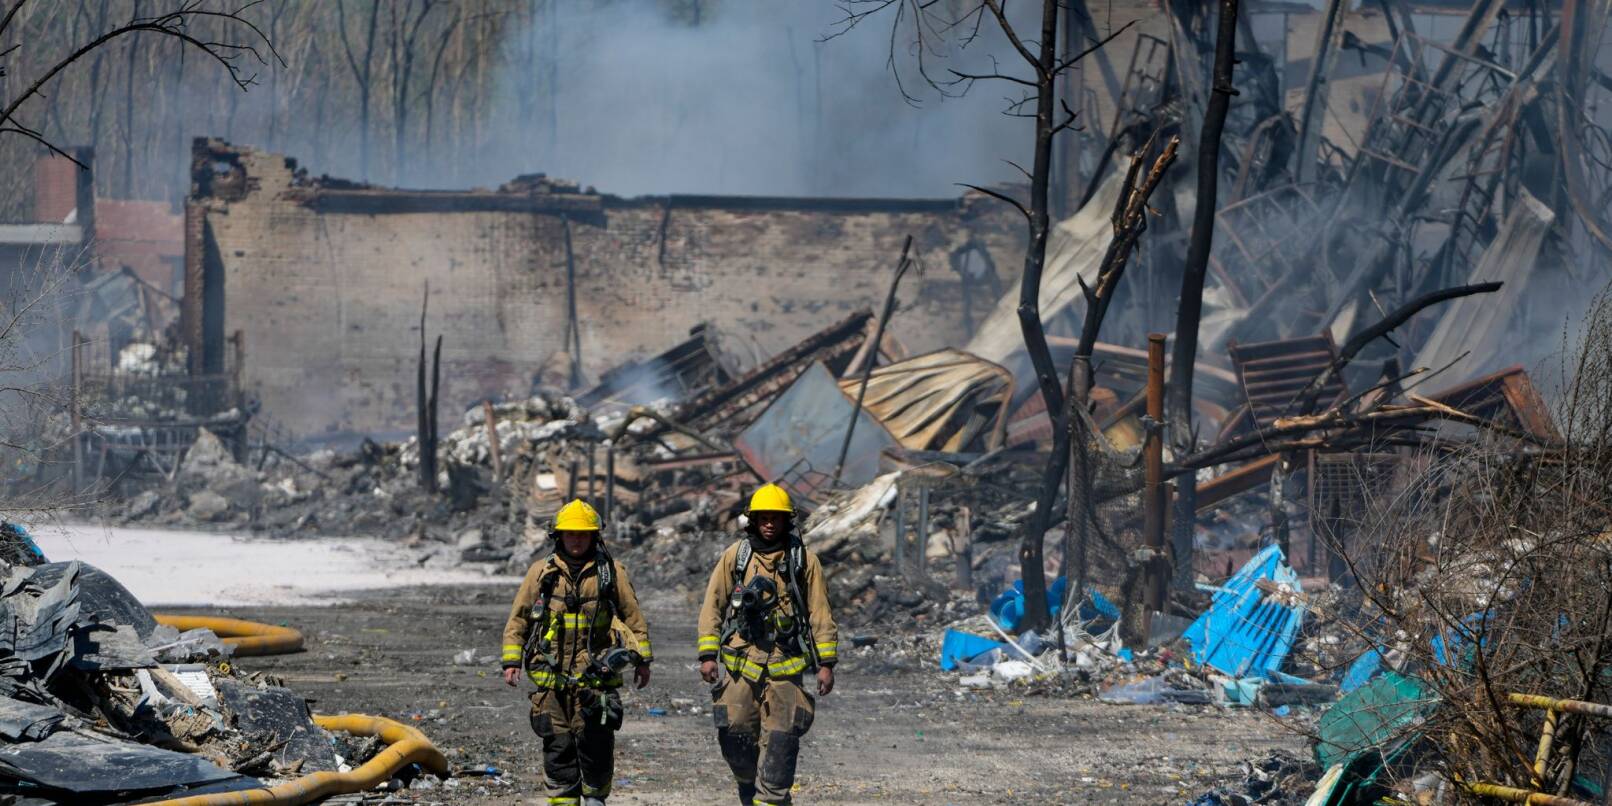 Wegen eines großen Feuers mit giftigem Rauch sollen sich Menschen in der Kleinstadt Richmond im US-Bundesstaat Indiana in Sicherheit bringen.